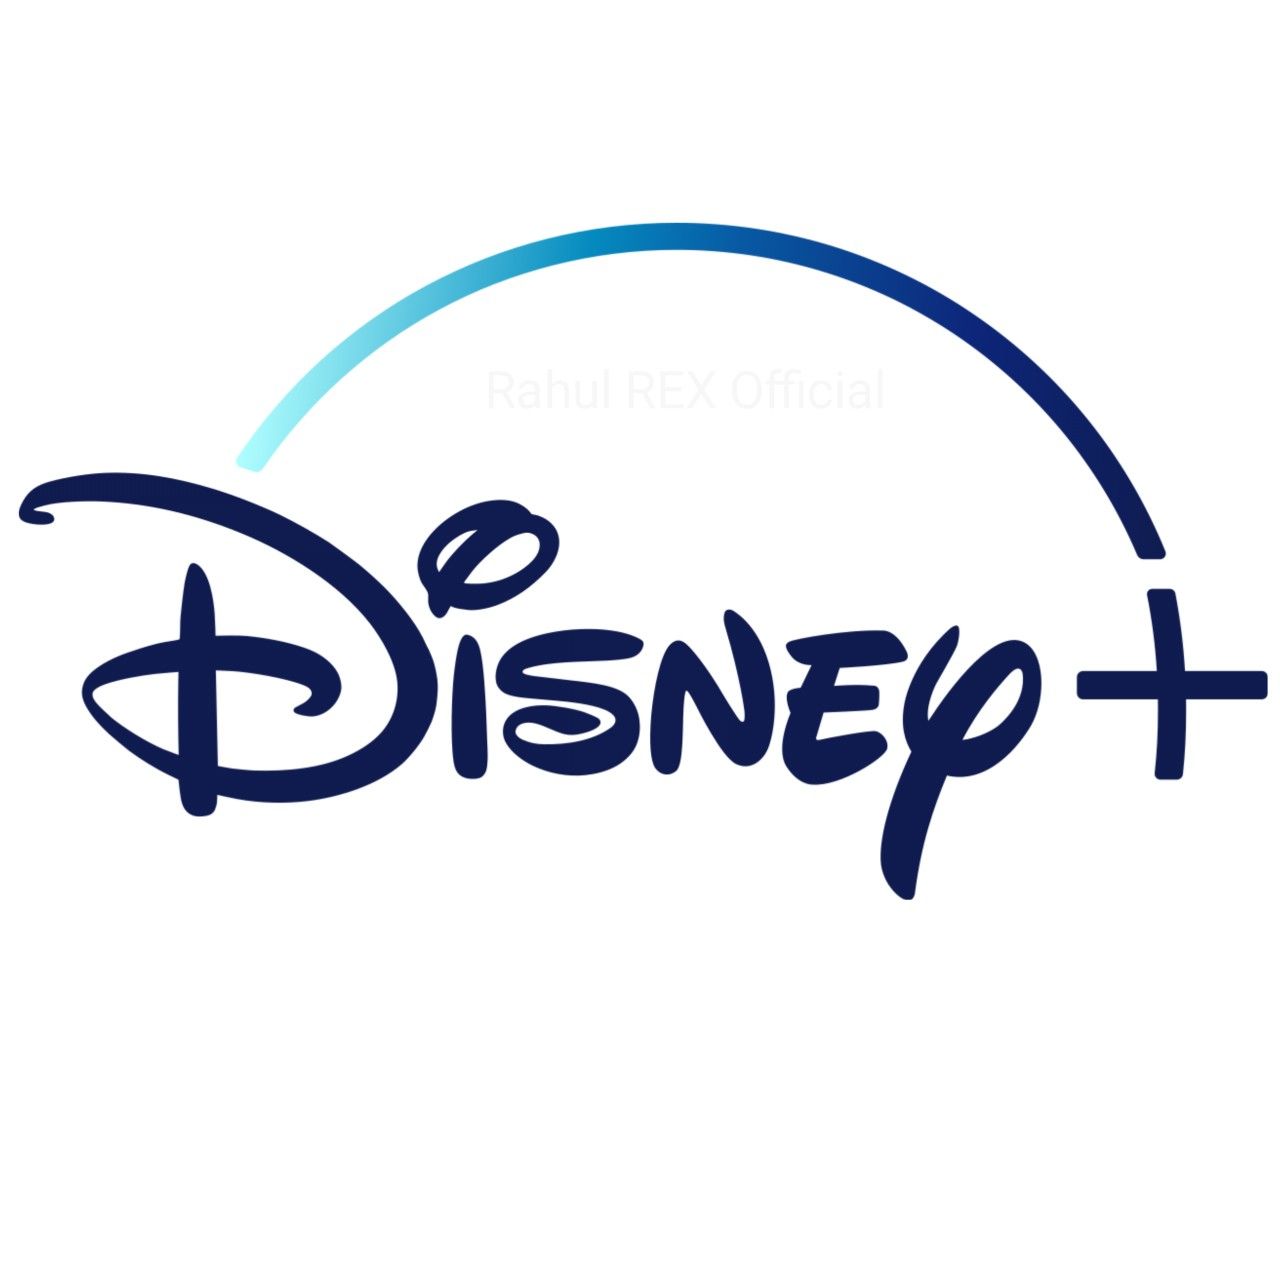 Disney+ rebajado de 69,99 euros a 59,99 euros durante un año: oferta limitada hasta el 23 de marzo